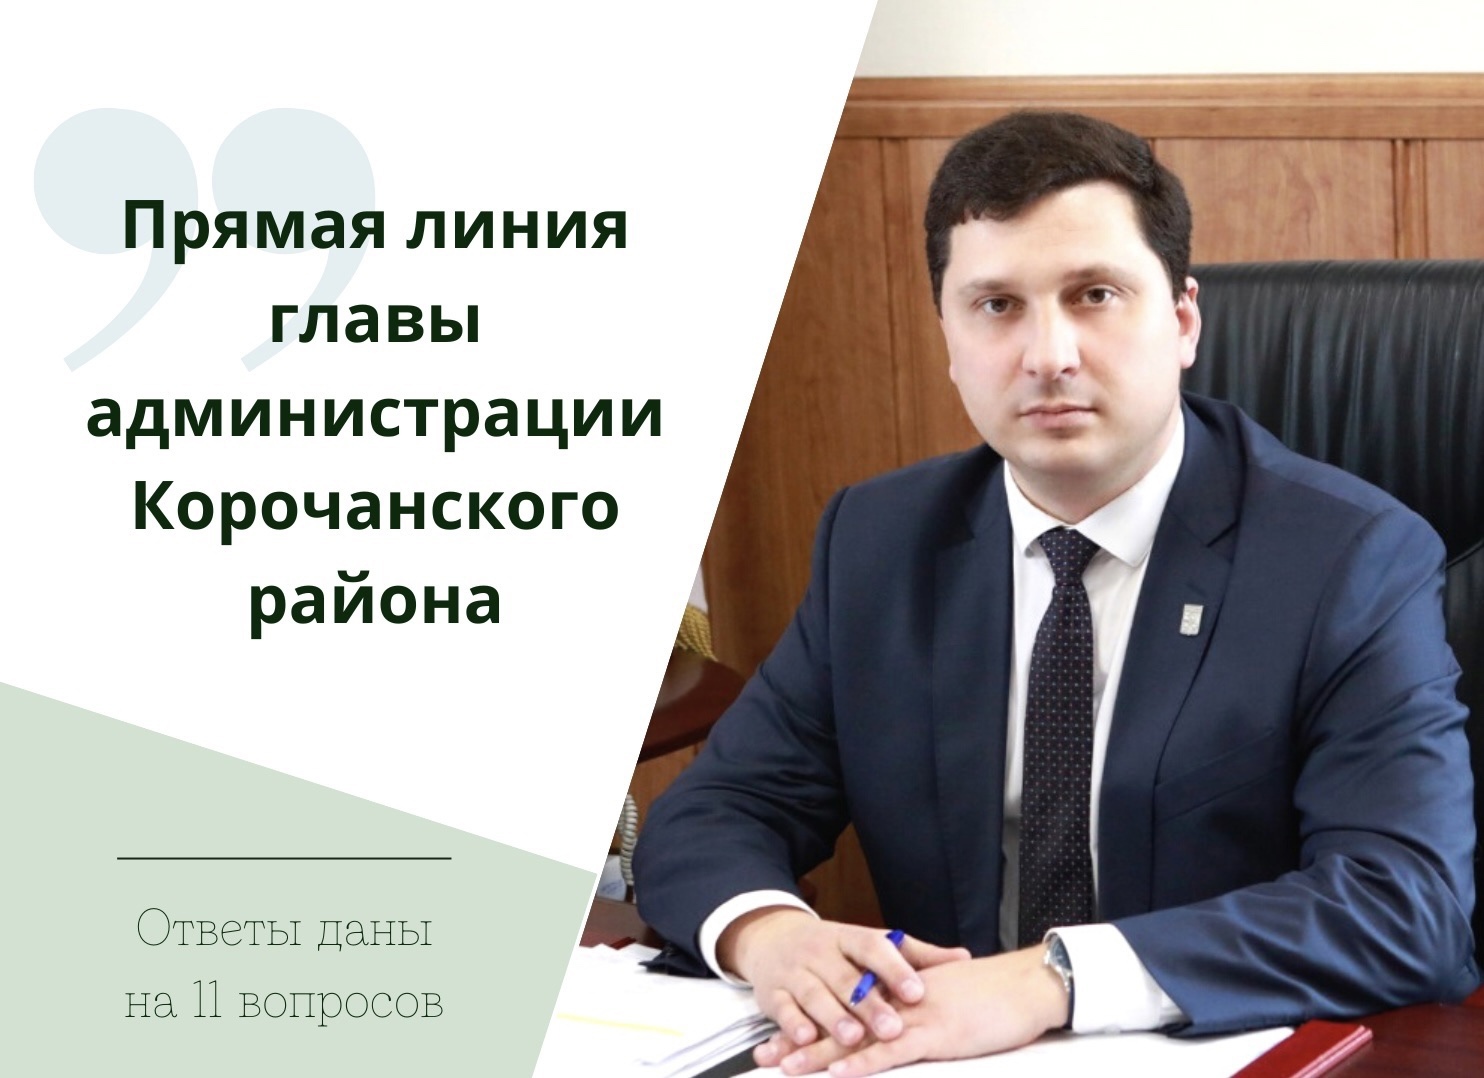 В ходе прямой линии глава администрации района Николай Васильевич Нестеров ответил на 11 вопросов